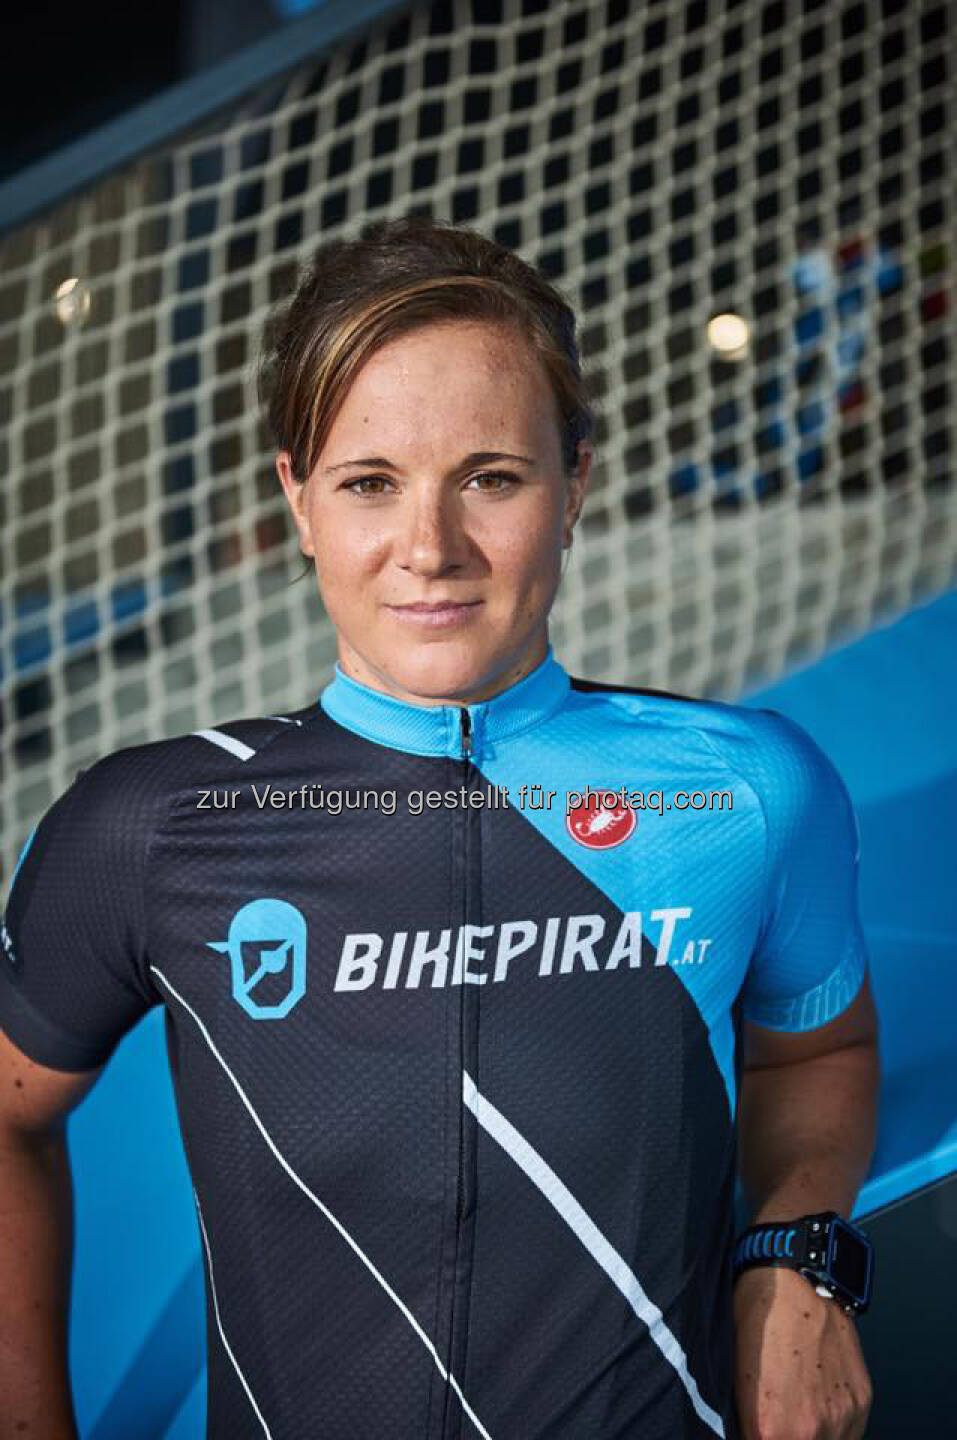 Tanja Stroschneider, Team Bikepirat.at